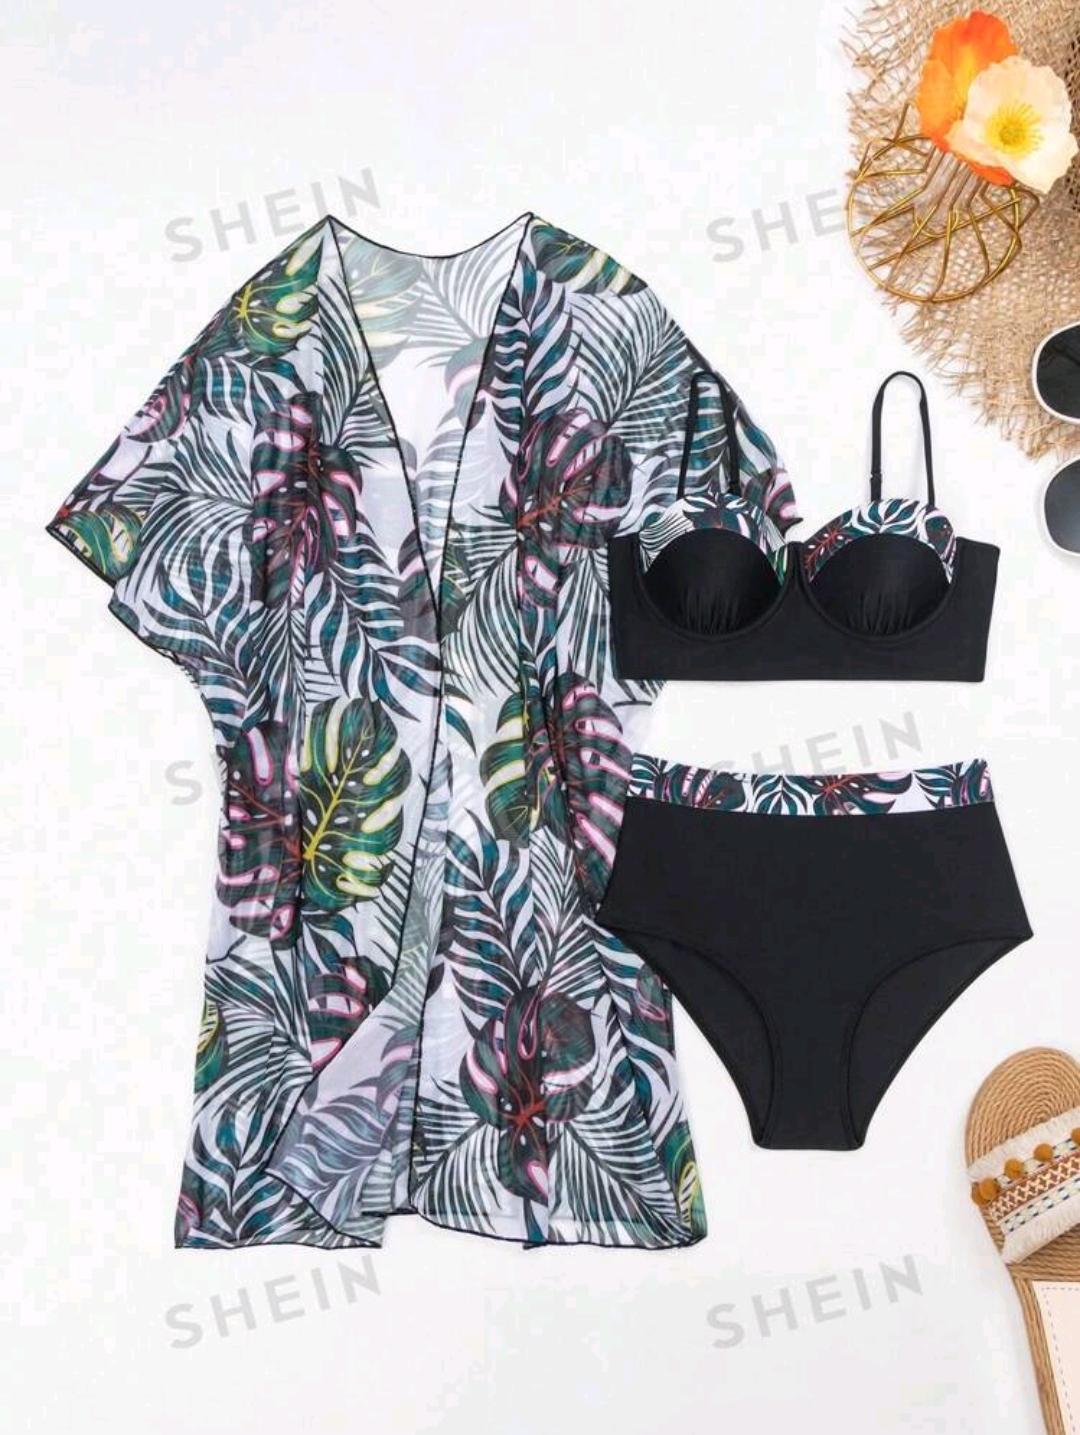 Купальник+кимоно SHEIN Swim Vcay Women's Plant Printed Two-Piece Bikini Swimwear, With Matching Kimono Cover Up